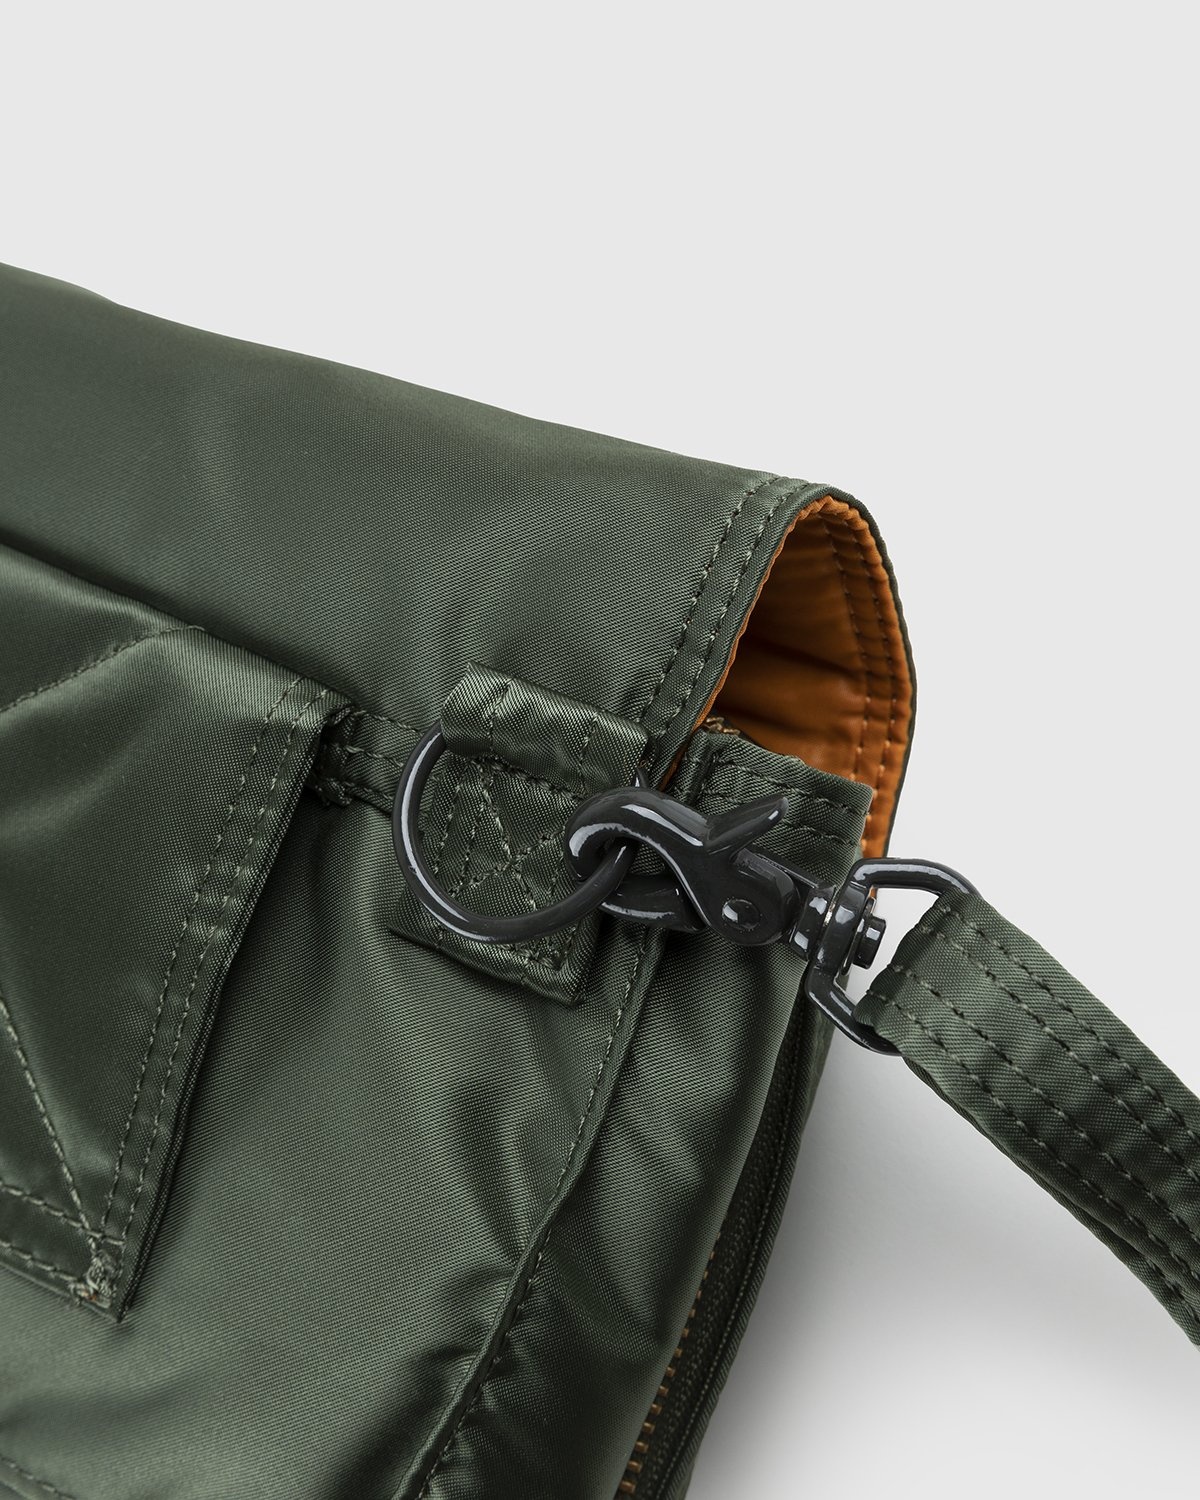 Porter-Yoshida & Co. – Tanker Clip Shoulder Bag Sage Green - Bags - Green - Image 3